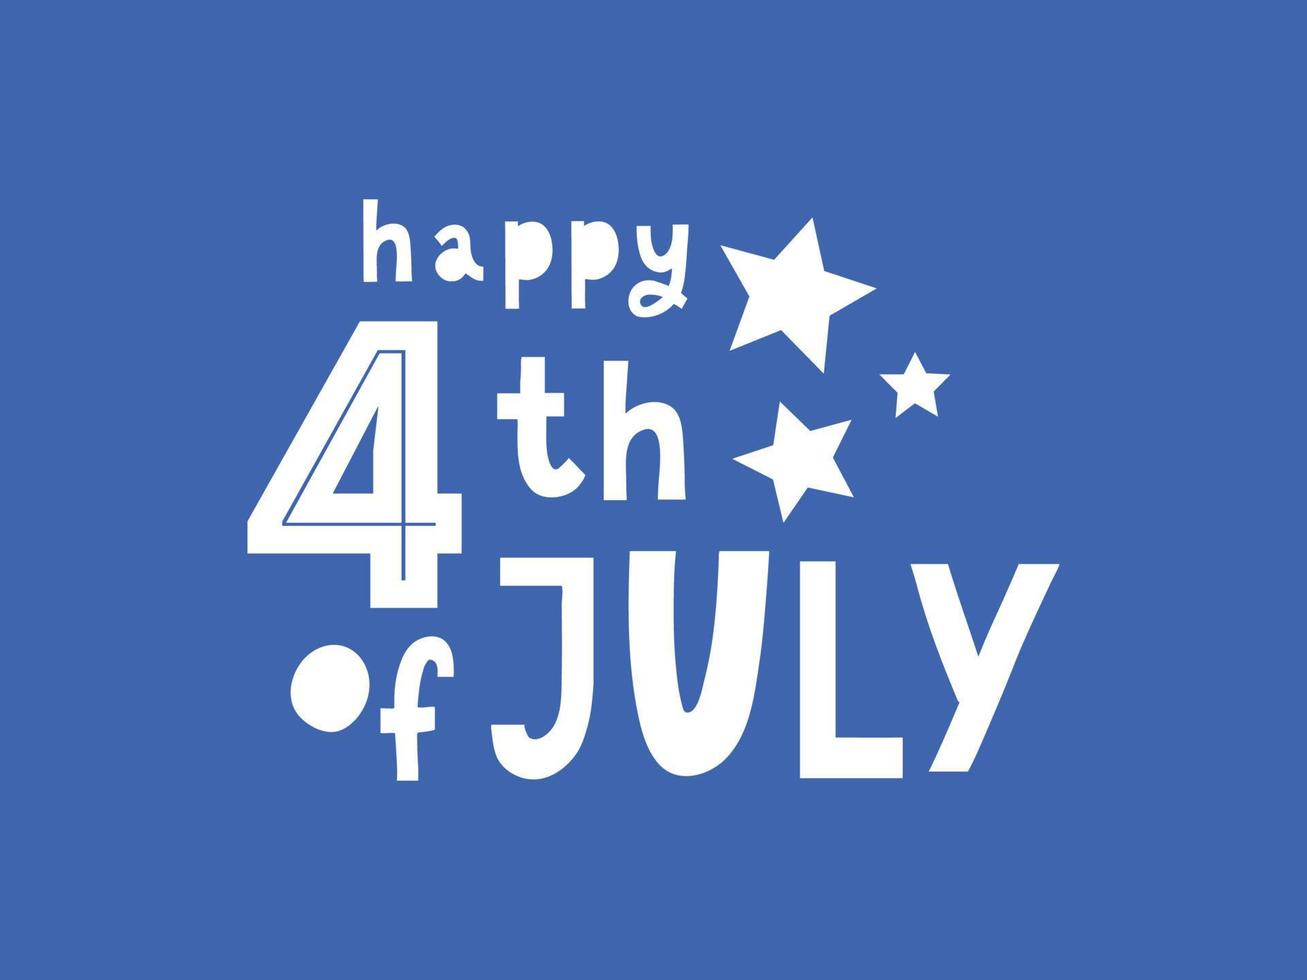 quarto 4 de julho design elegante do dia da independência americana, quarto de julho vetor